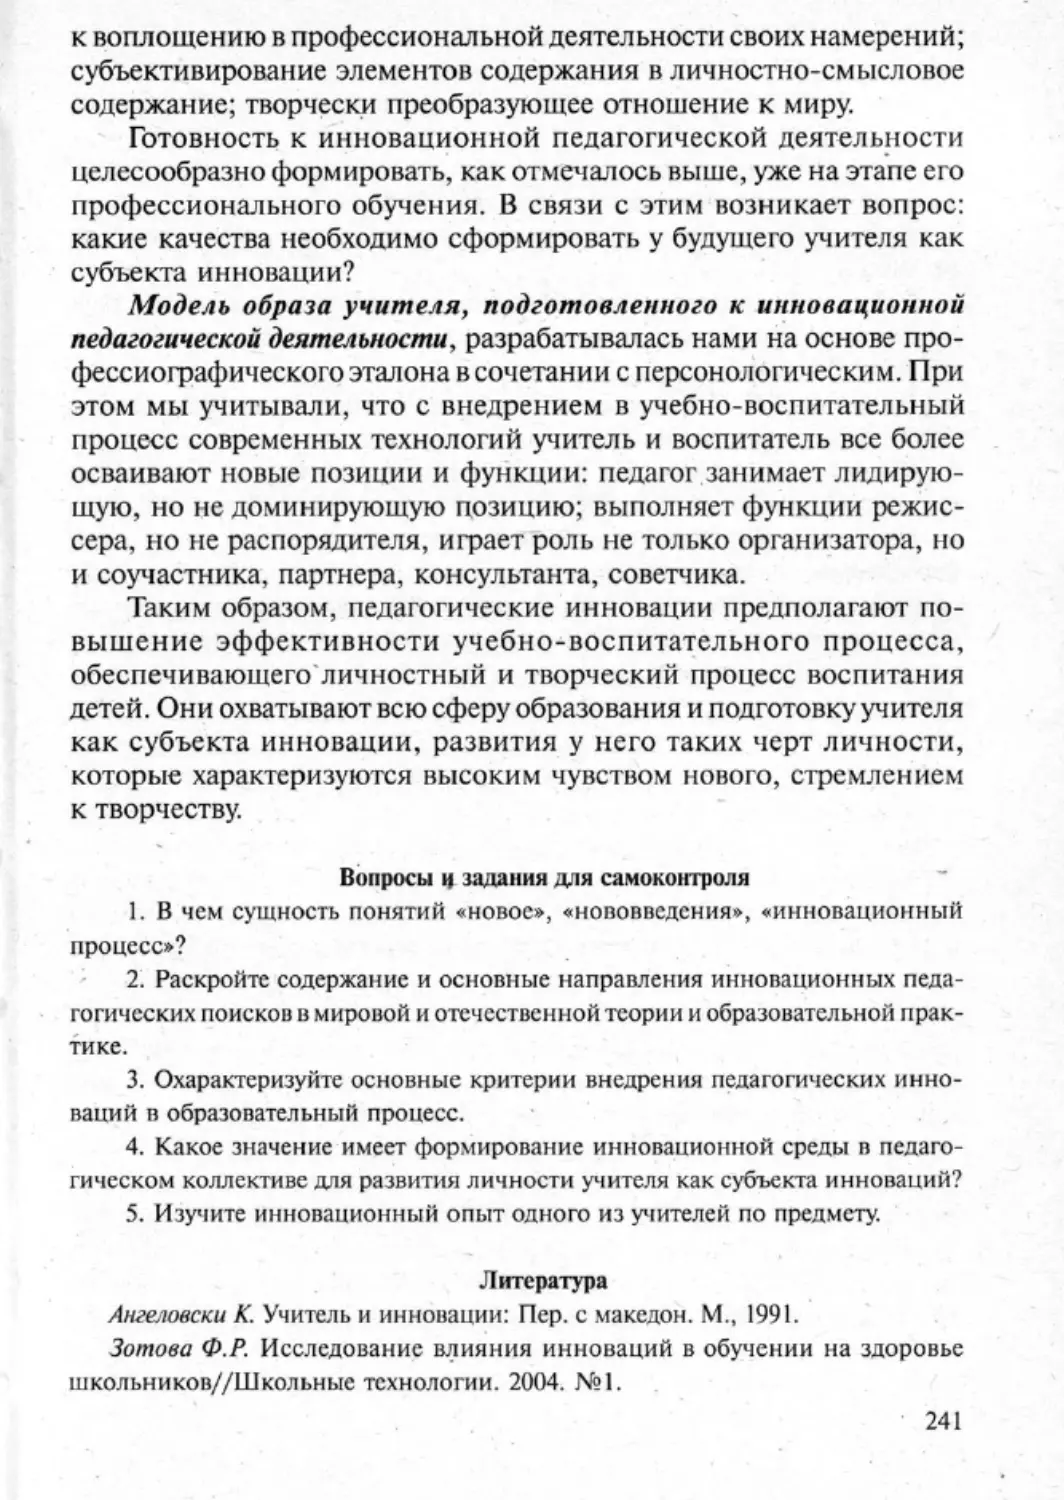 Загрекова Л.В., Николаева В.В - 0242